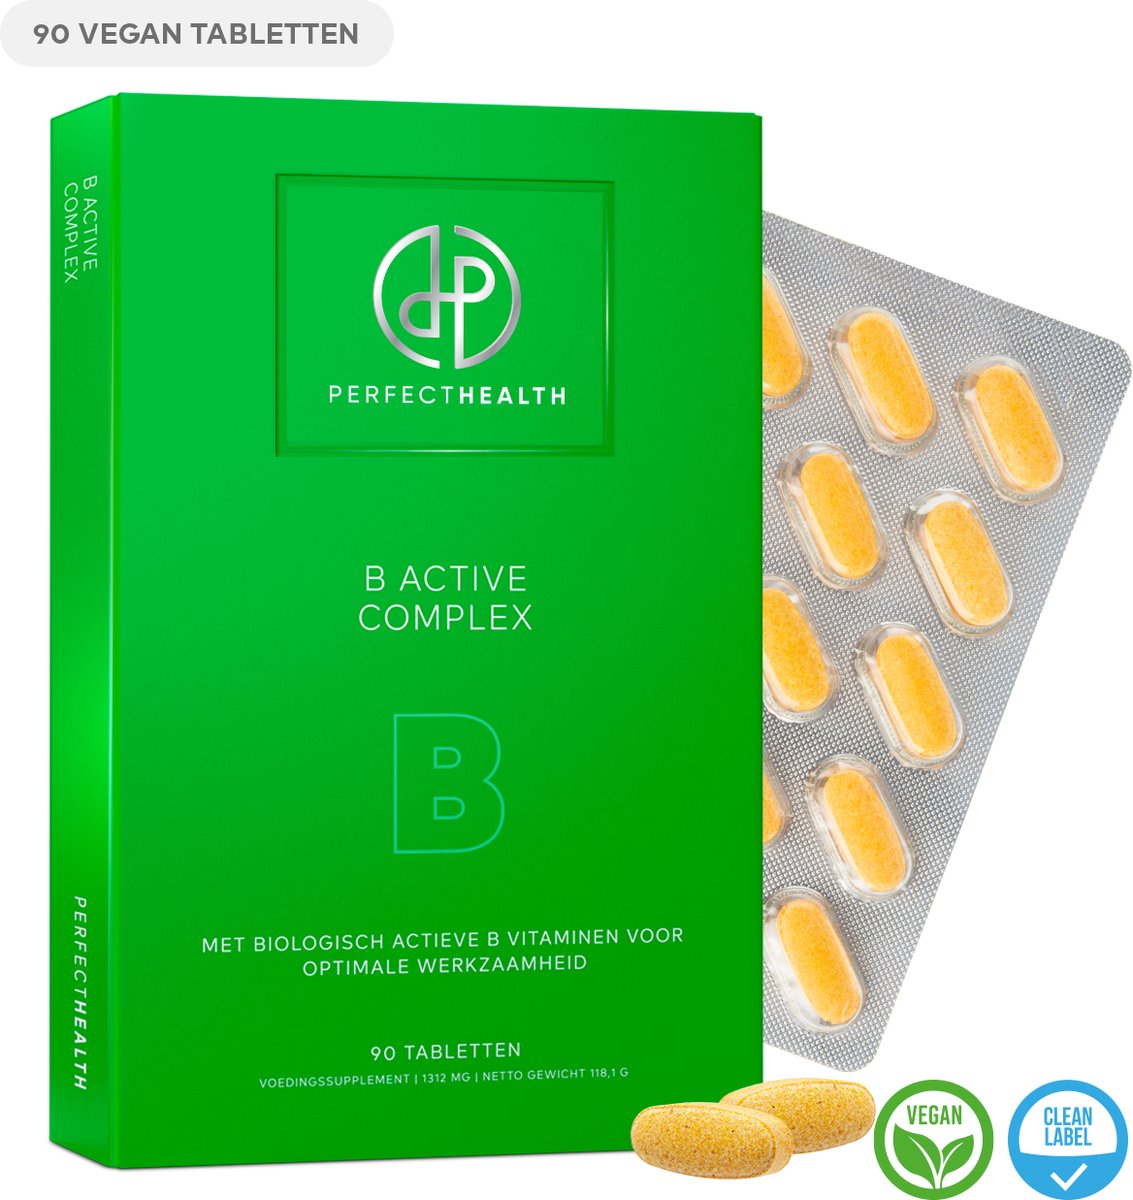 Perfect Health - B Active Complex - Voor de energiehuishouding, zenuwstelsel en immuunsysteem - Vitamine B1, B6, B12 en Biotine - 90 tabletten - Vegan